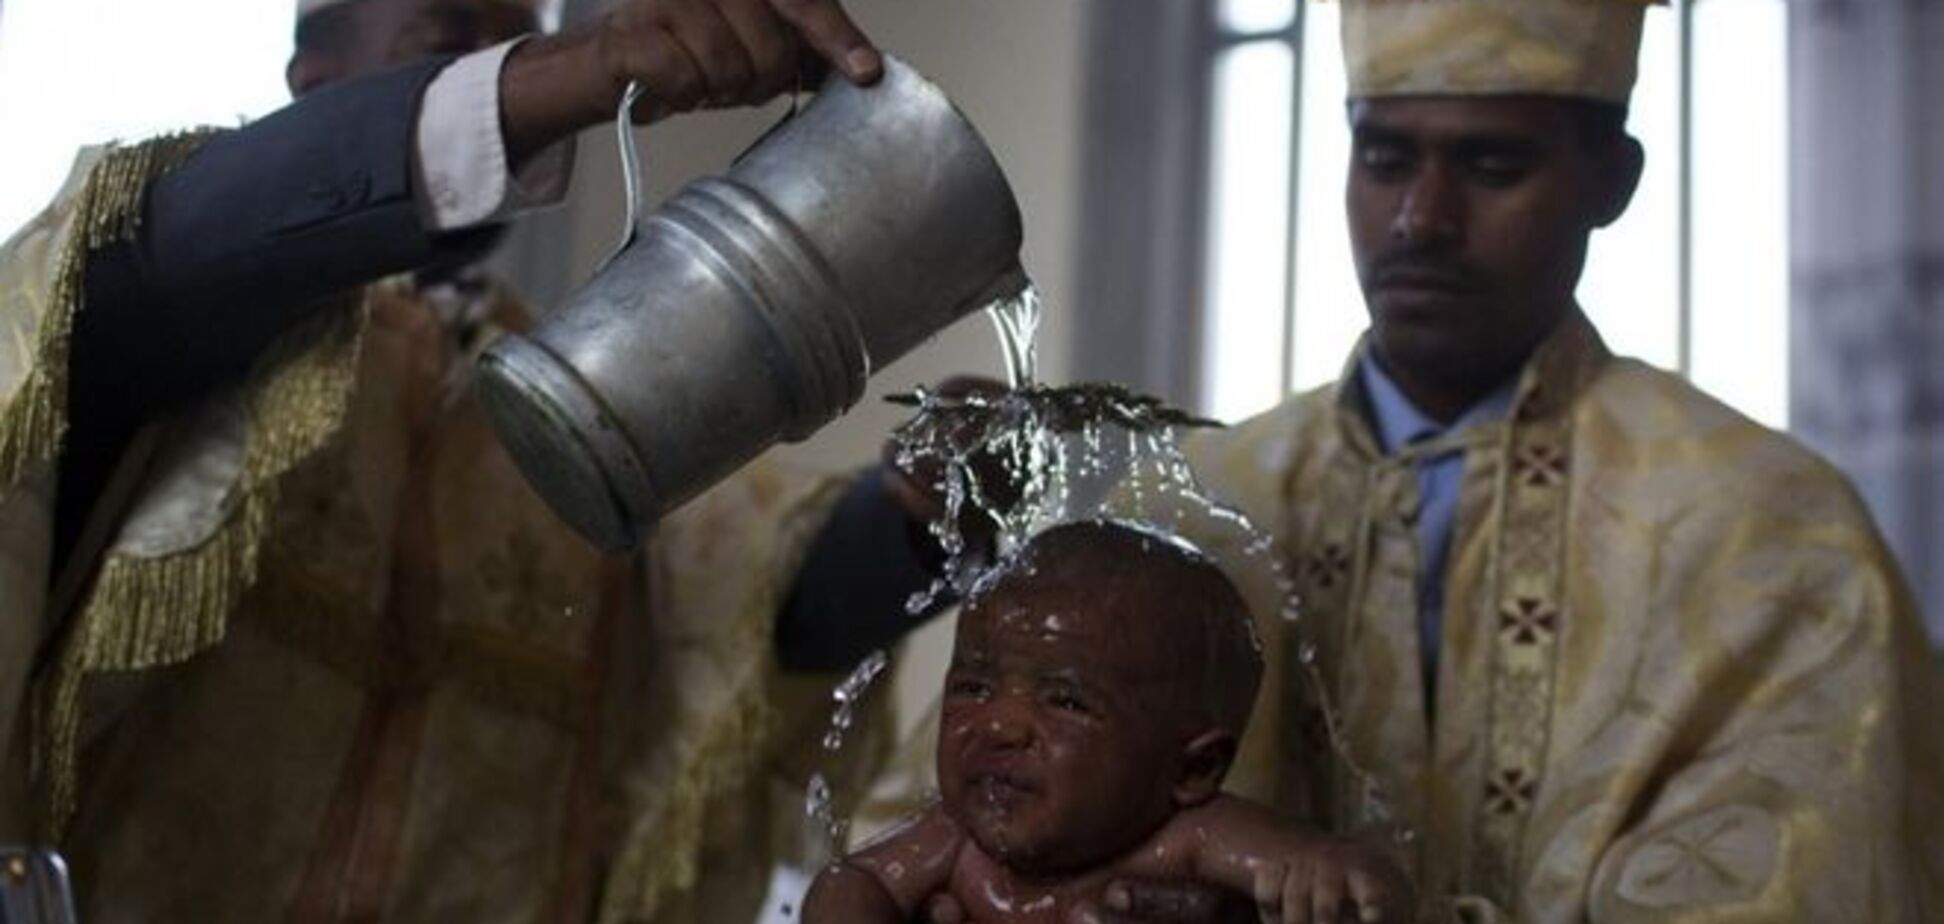 Колыбель христианства в Африке: путешествие в Эфиопию